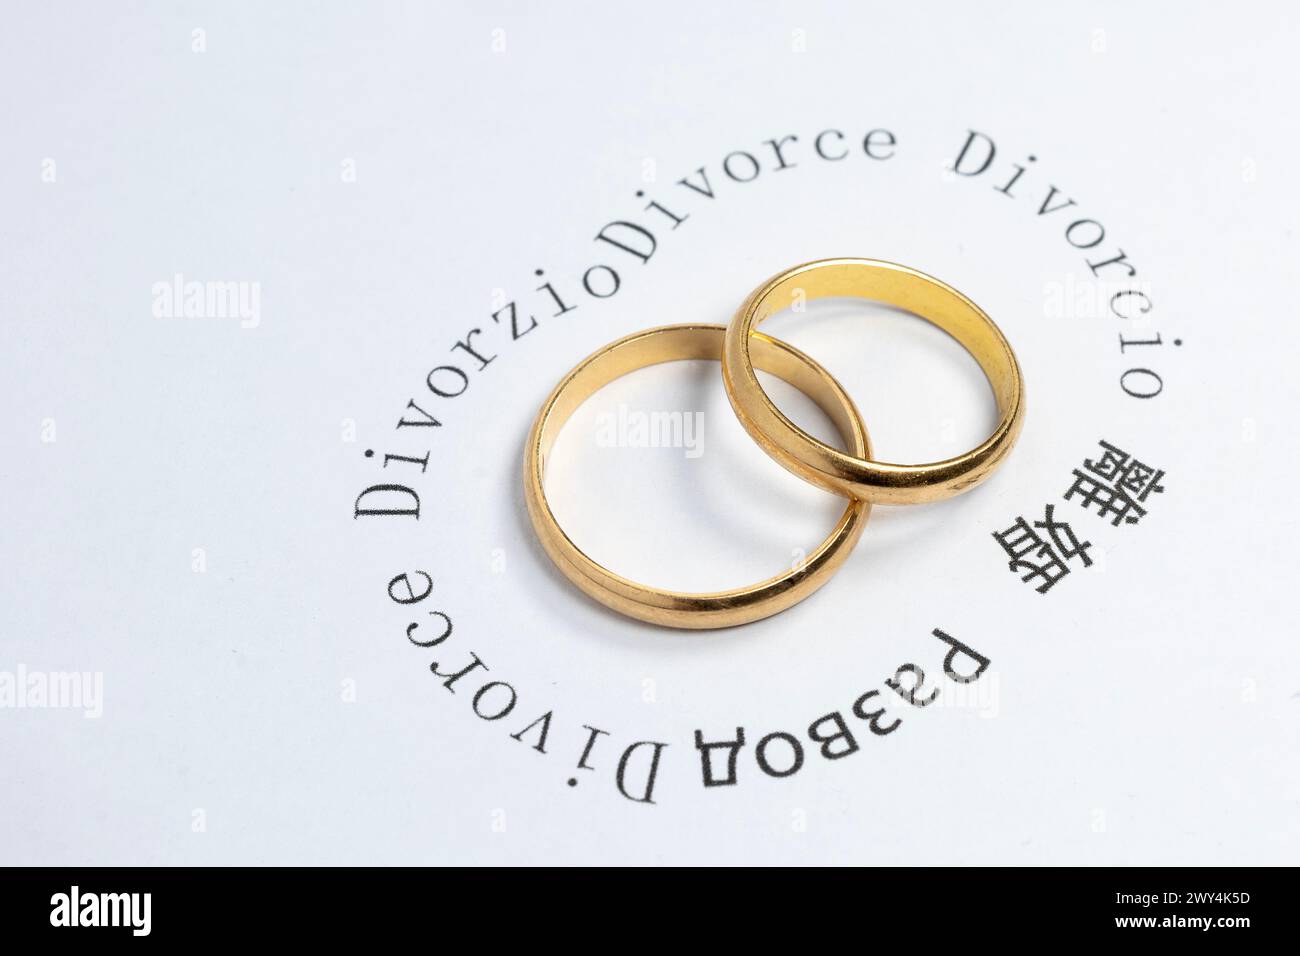 Concept de divorce : anneaux de mariage entourés du mot divorce écrit dans différentes langues Banque D'Images